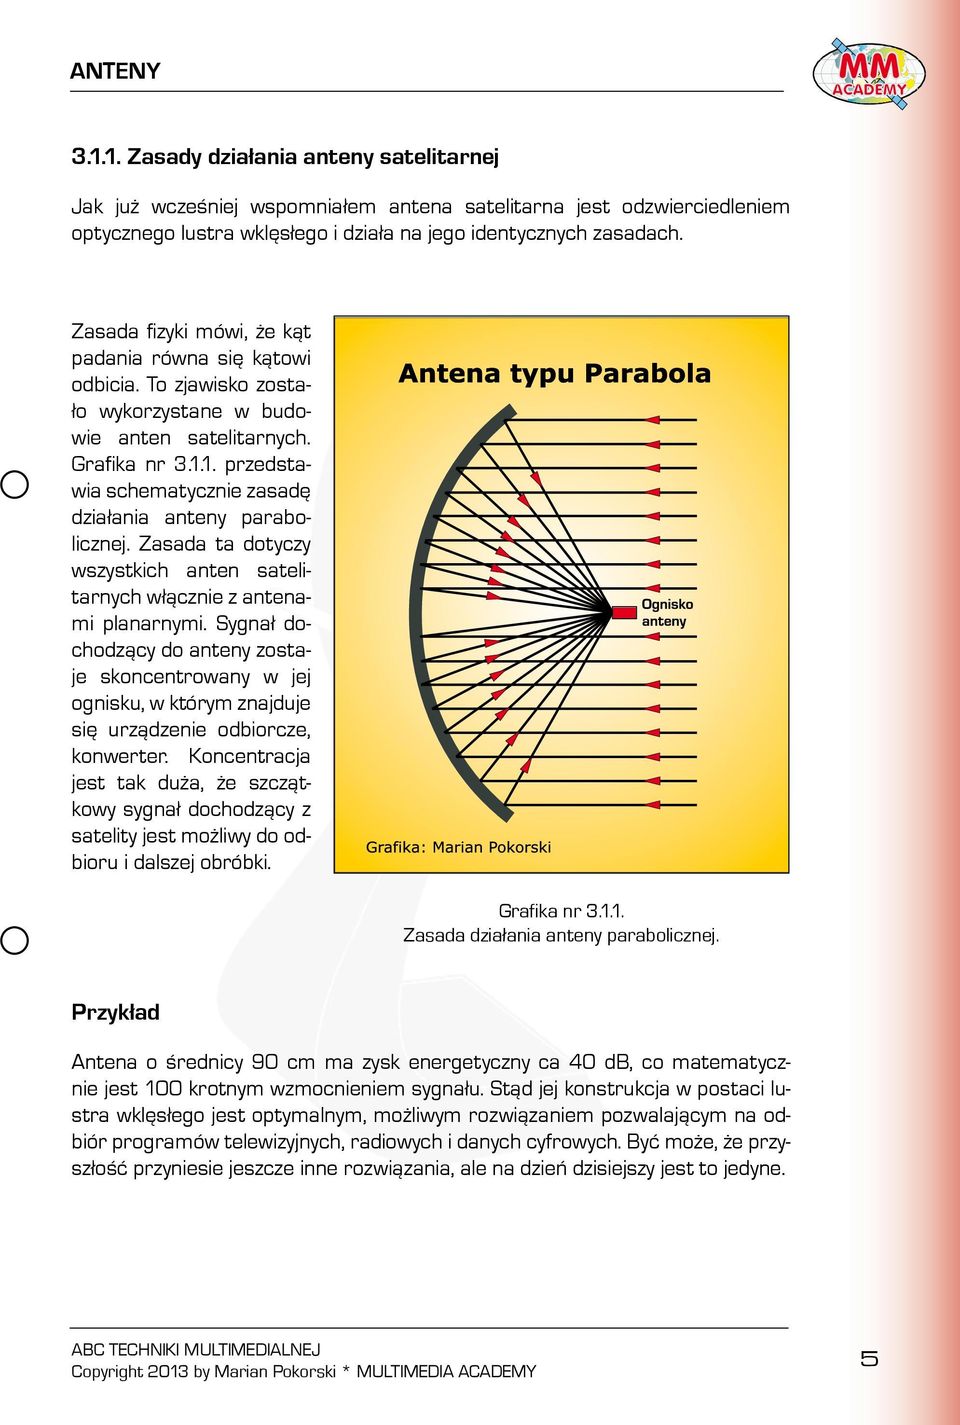 1. przedstawia schematycznie zasadę działania anteny parabolicznej. Zasada ta dotyczy wszystkich anten satelitarnych włącznie z antenami planarnymi.